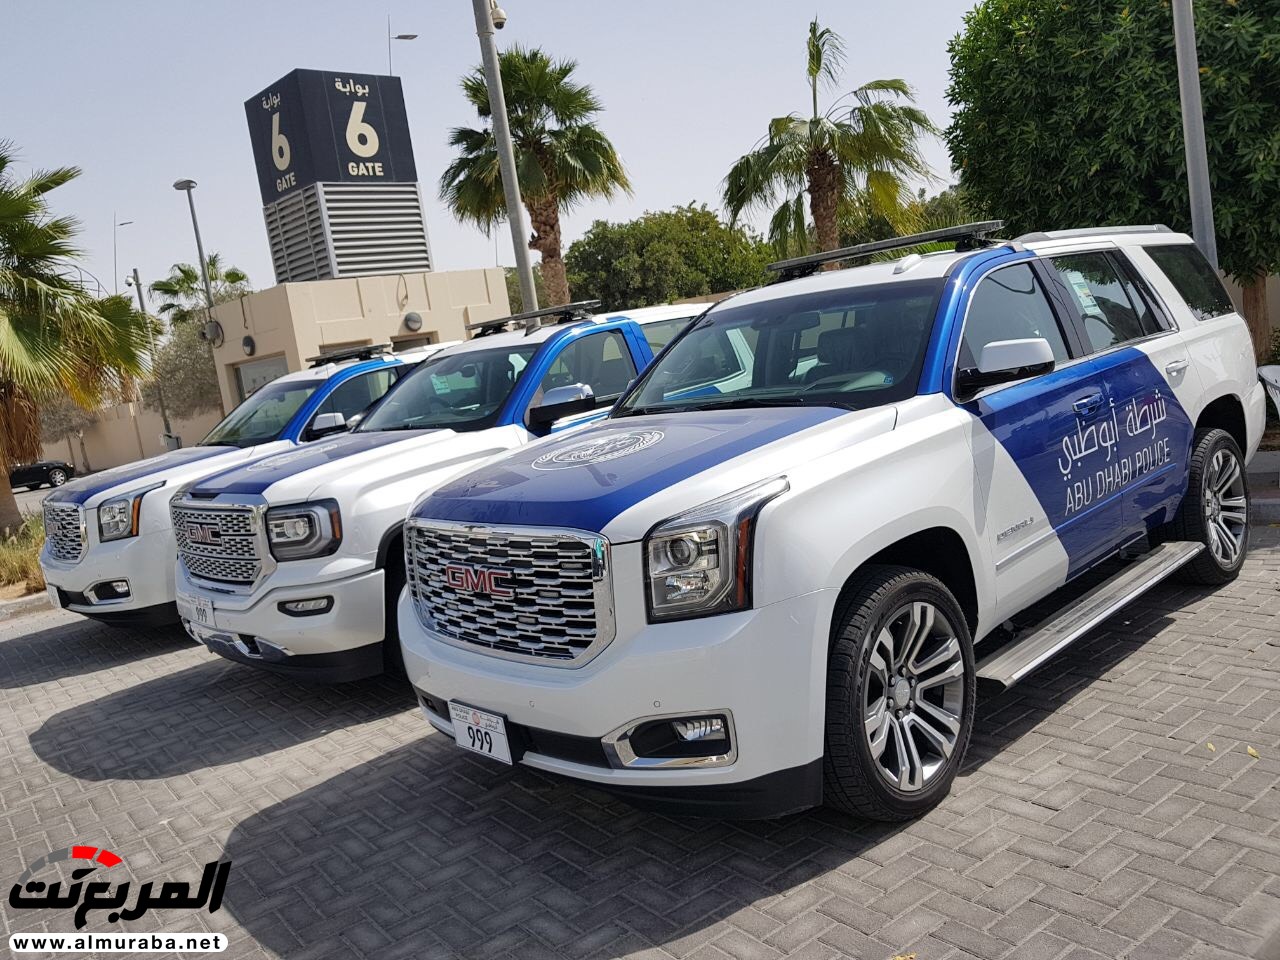 191 سيارة جمس تدخل موسوعة جينيس بعد تنظيم استعراض في أبو ظبي 6